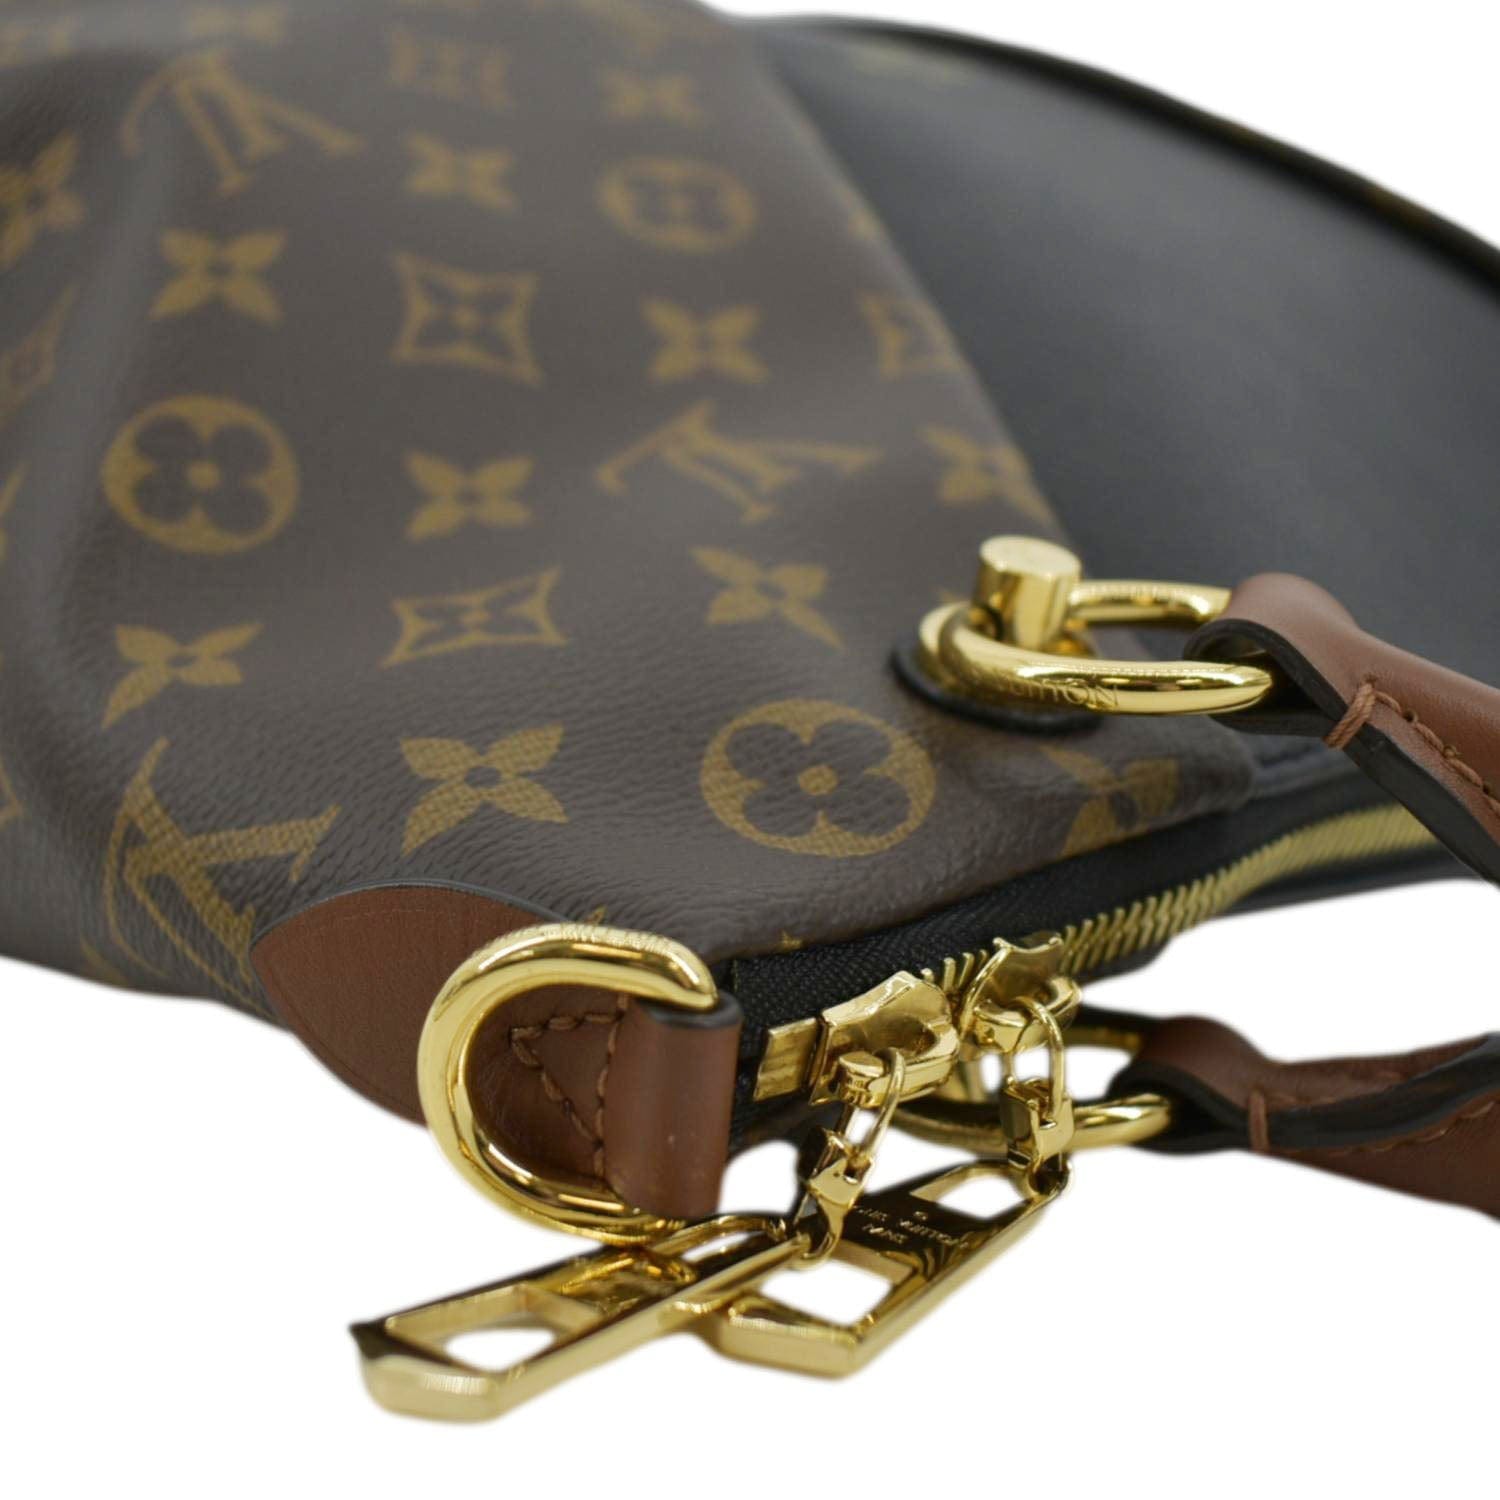 Handbag Review & Comparison, Louis Vuitton Favorite MM & Favorite PM